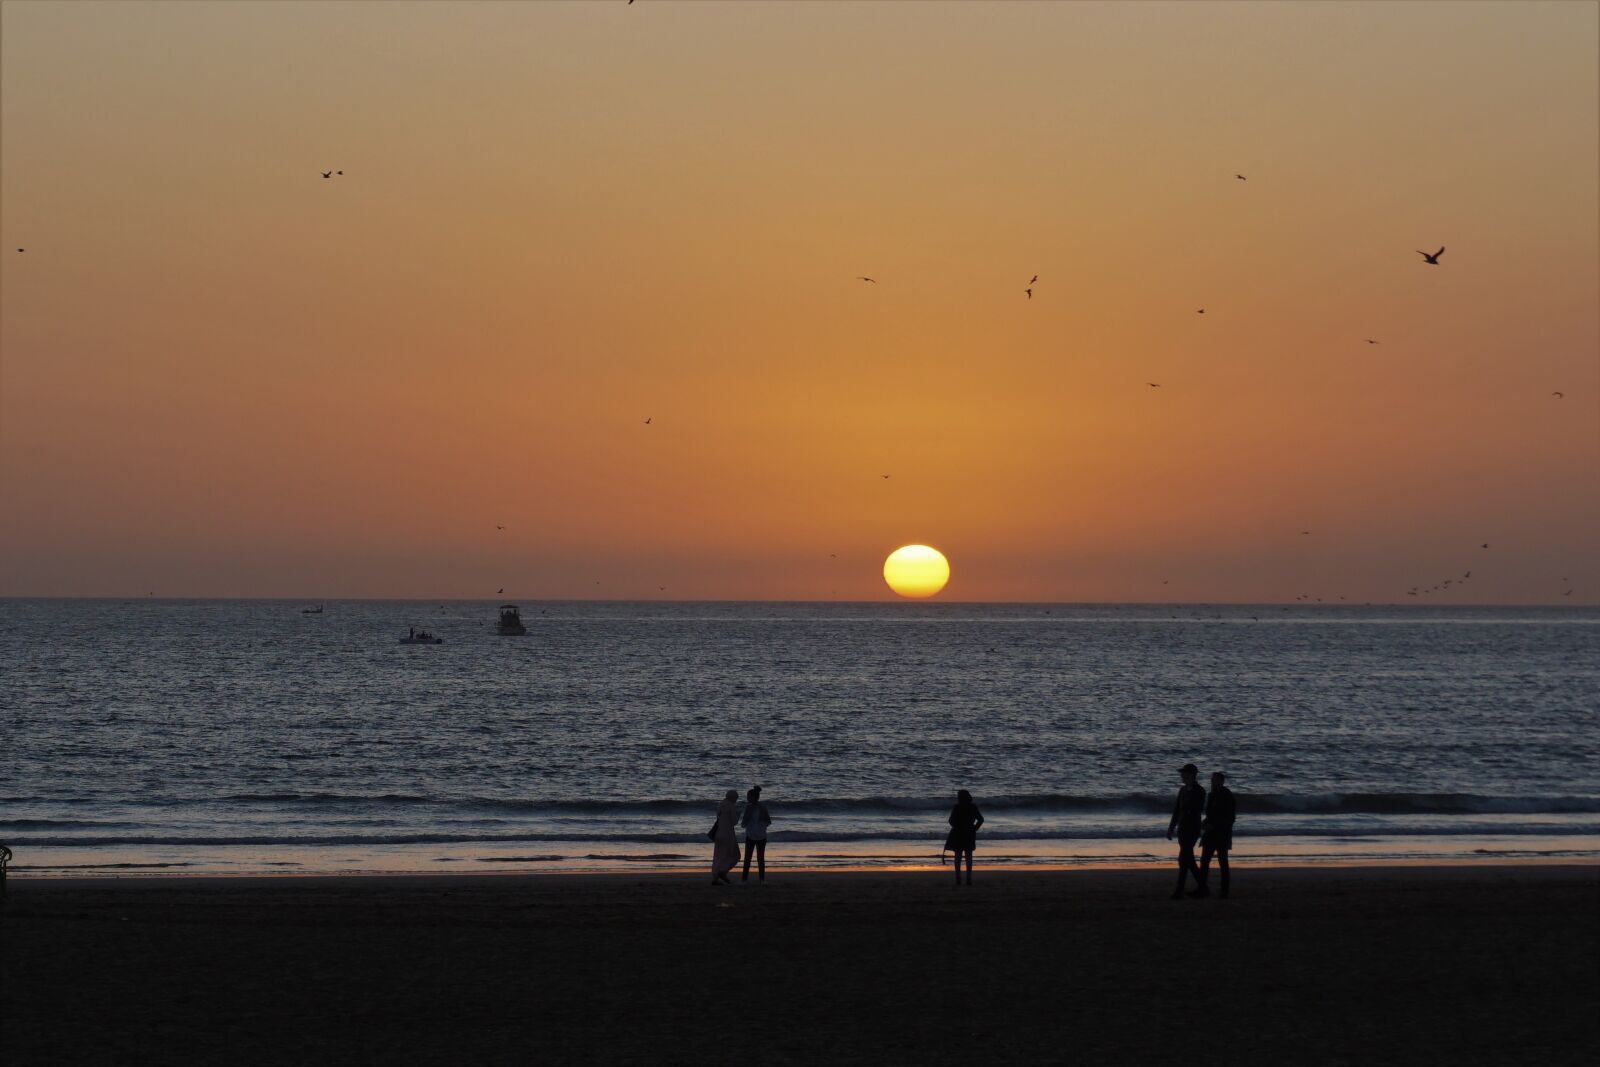 Sony a5100 sample photo. Agadir, ocean, sunset photography